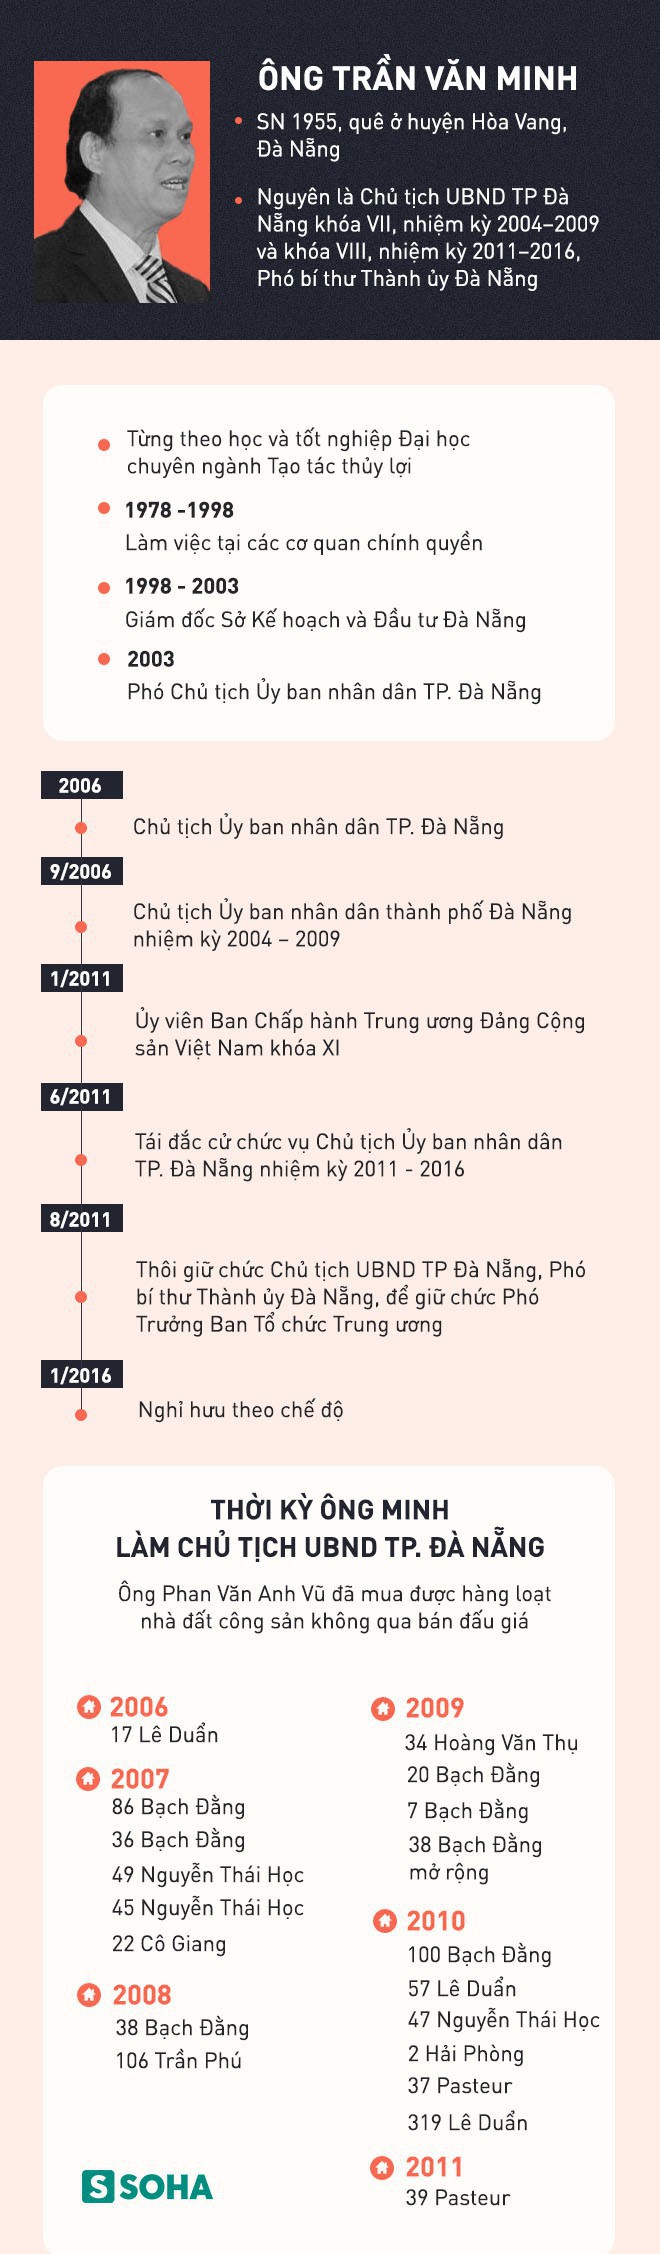 Khám nhà cựu Chủ tịch Đà Nẵng Trần Văn Minh, công an phát hiện 5 khẩu súng, 18 viên đạn - Ảnh 3.